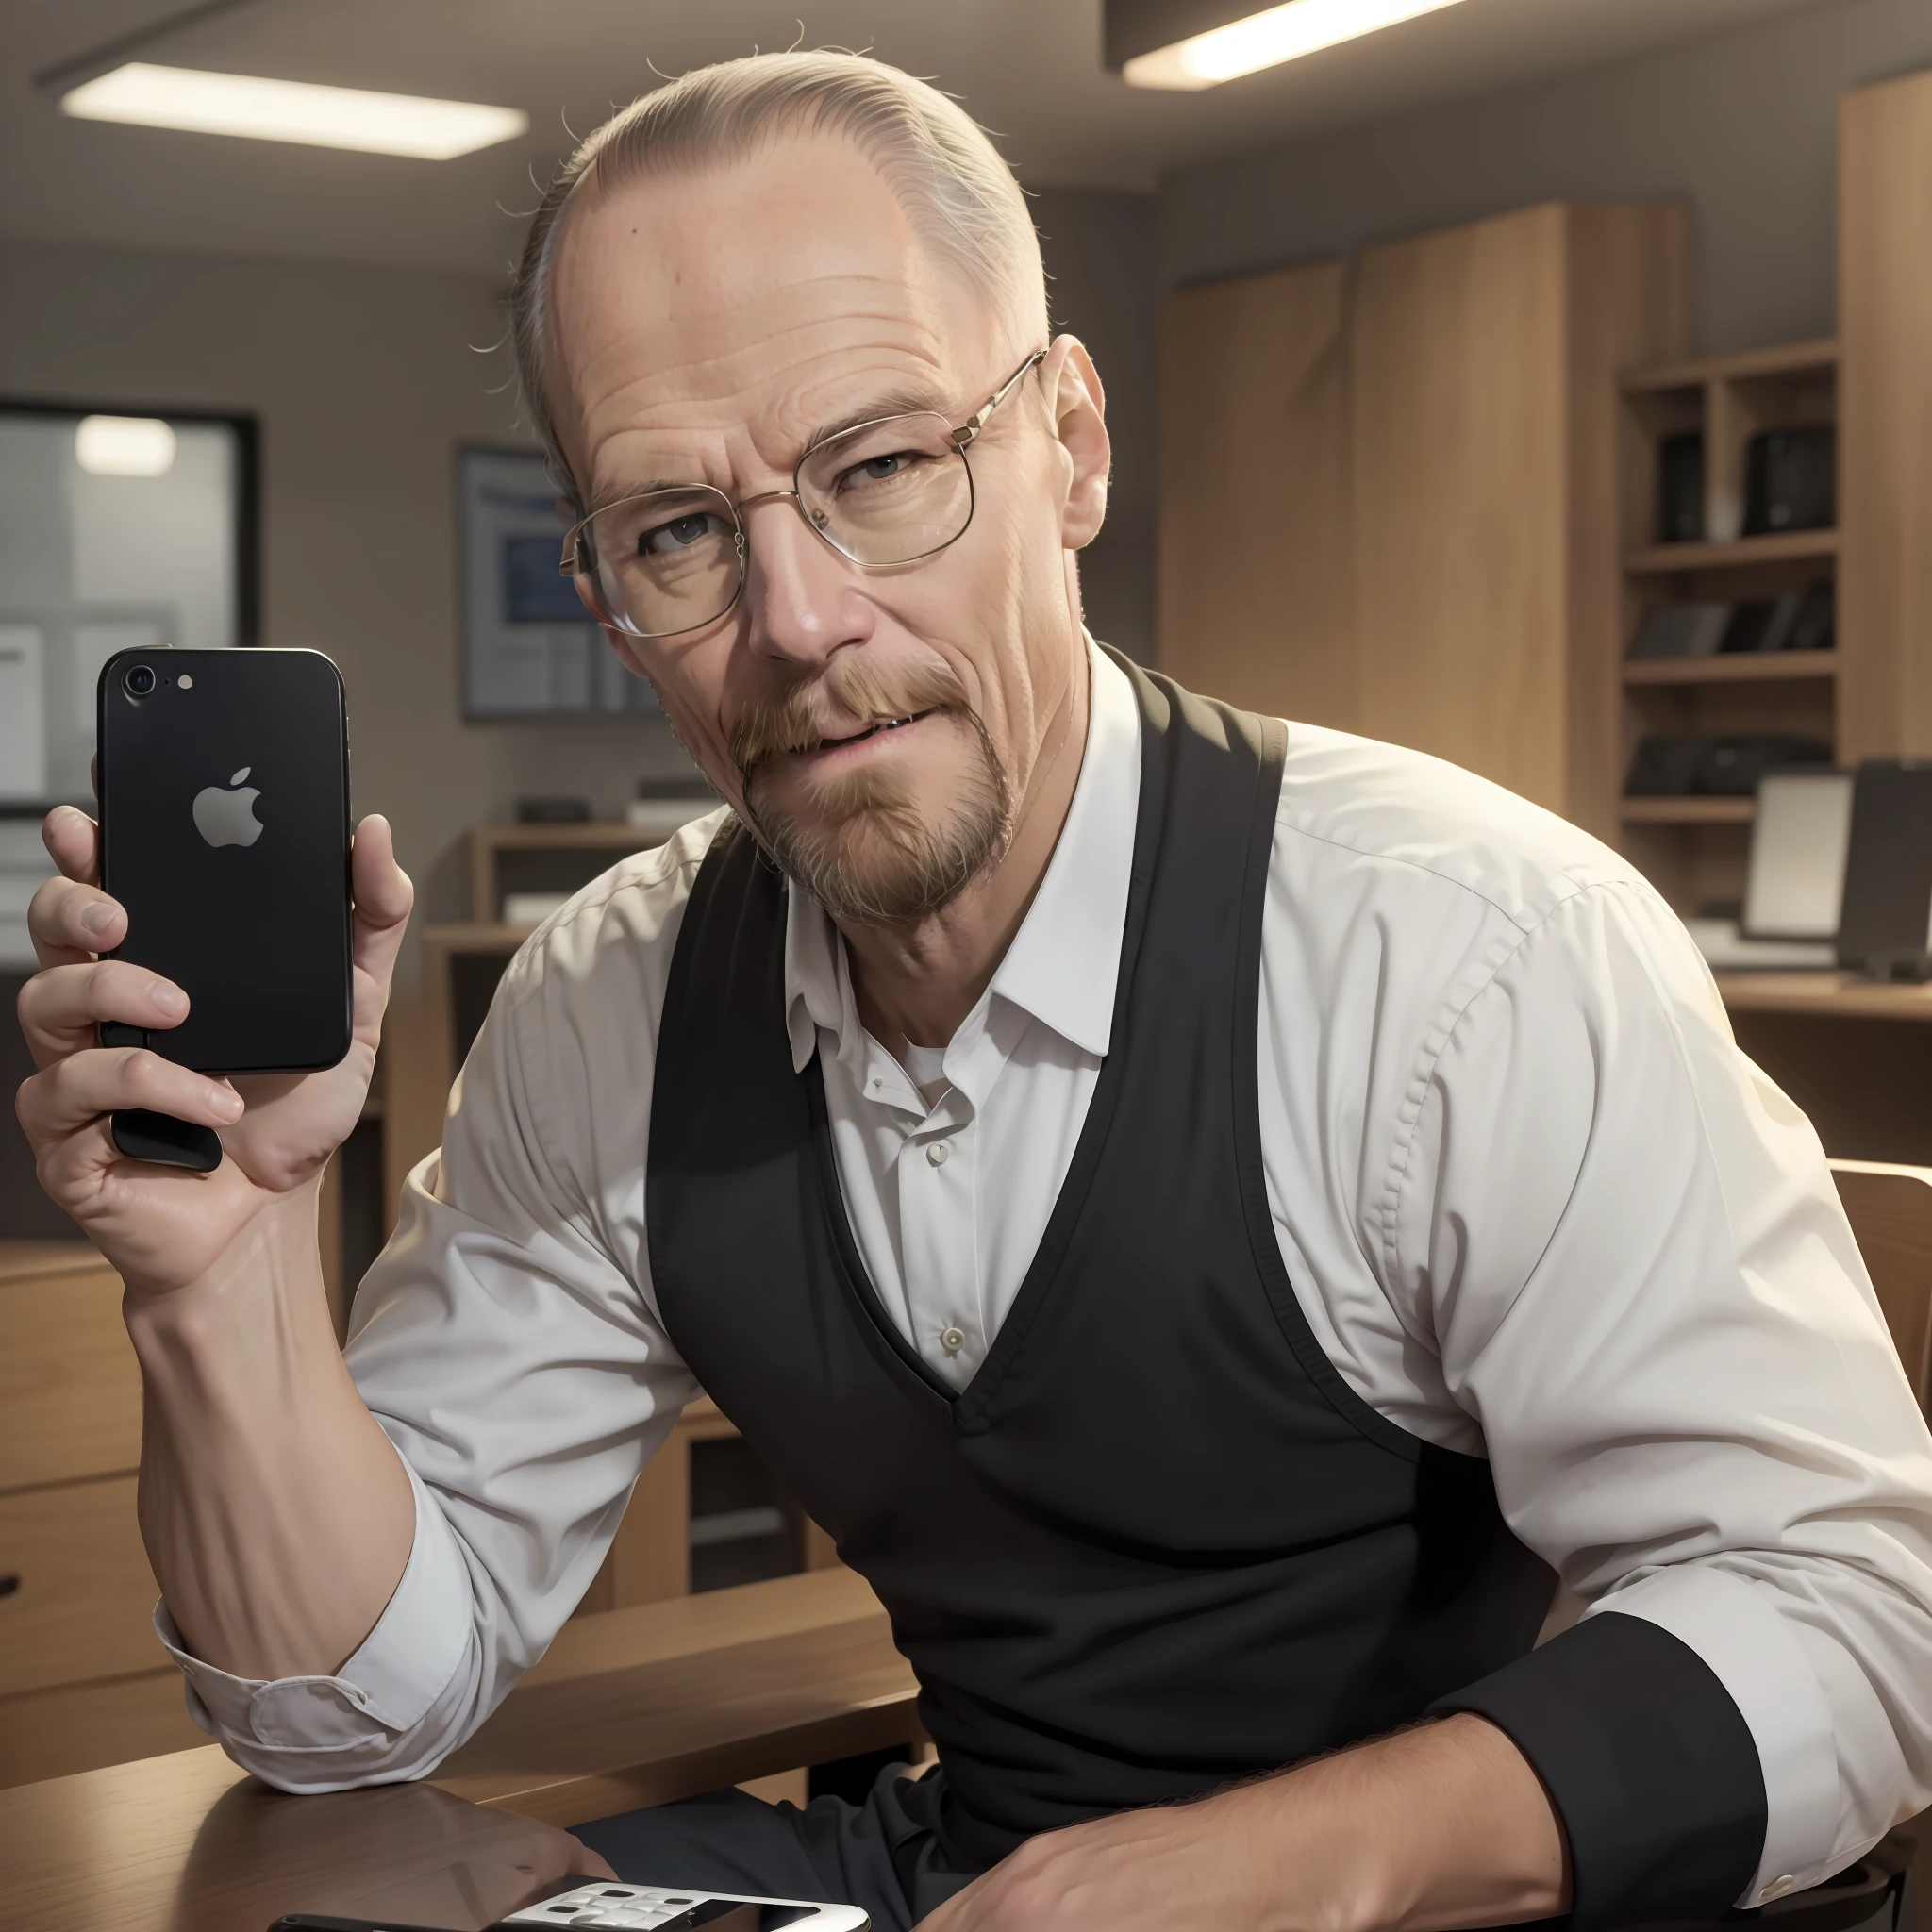 Steven Poul Jobs con un teléfono móvil en la mano, anteojos, barba, manzana, manzana Phone, iPhone, manzana Cell Phone, Sonrisa segura, pirata,